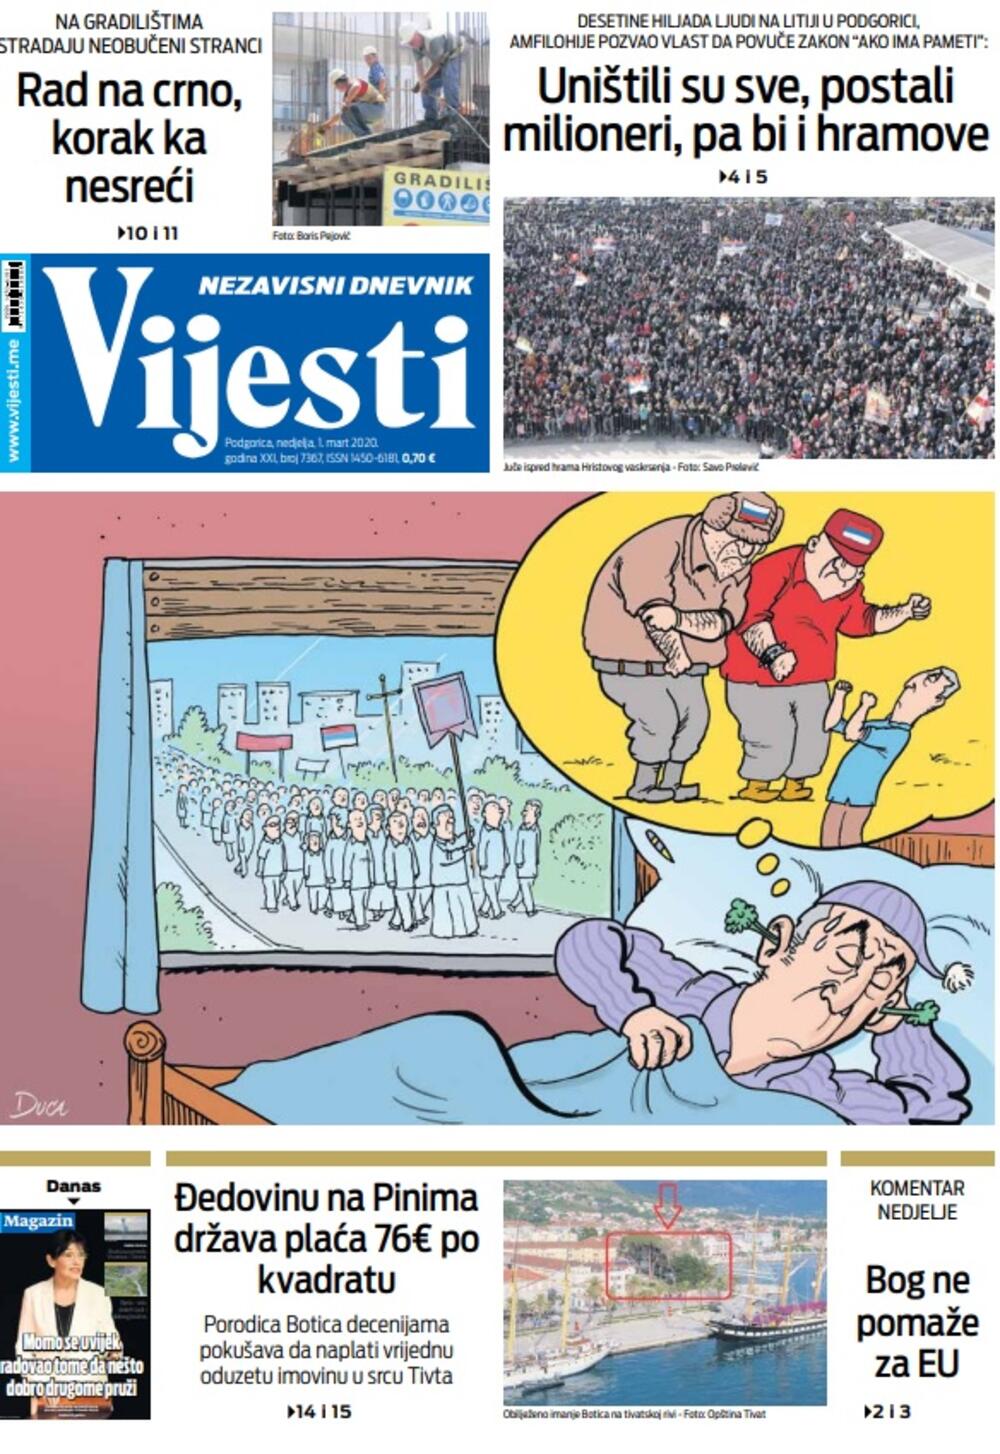 Naslovna strana "Vijesti" za nedjelju 1. mart 2020. godine, Foto: "Vijesti"